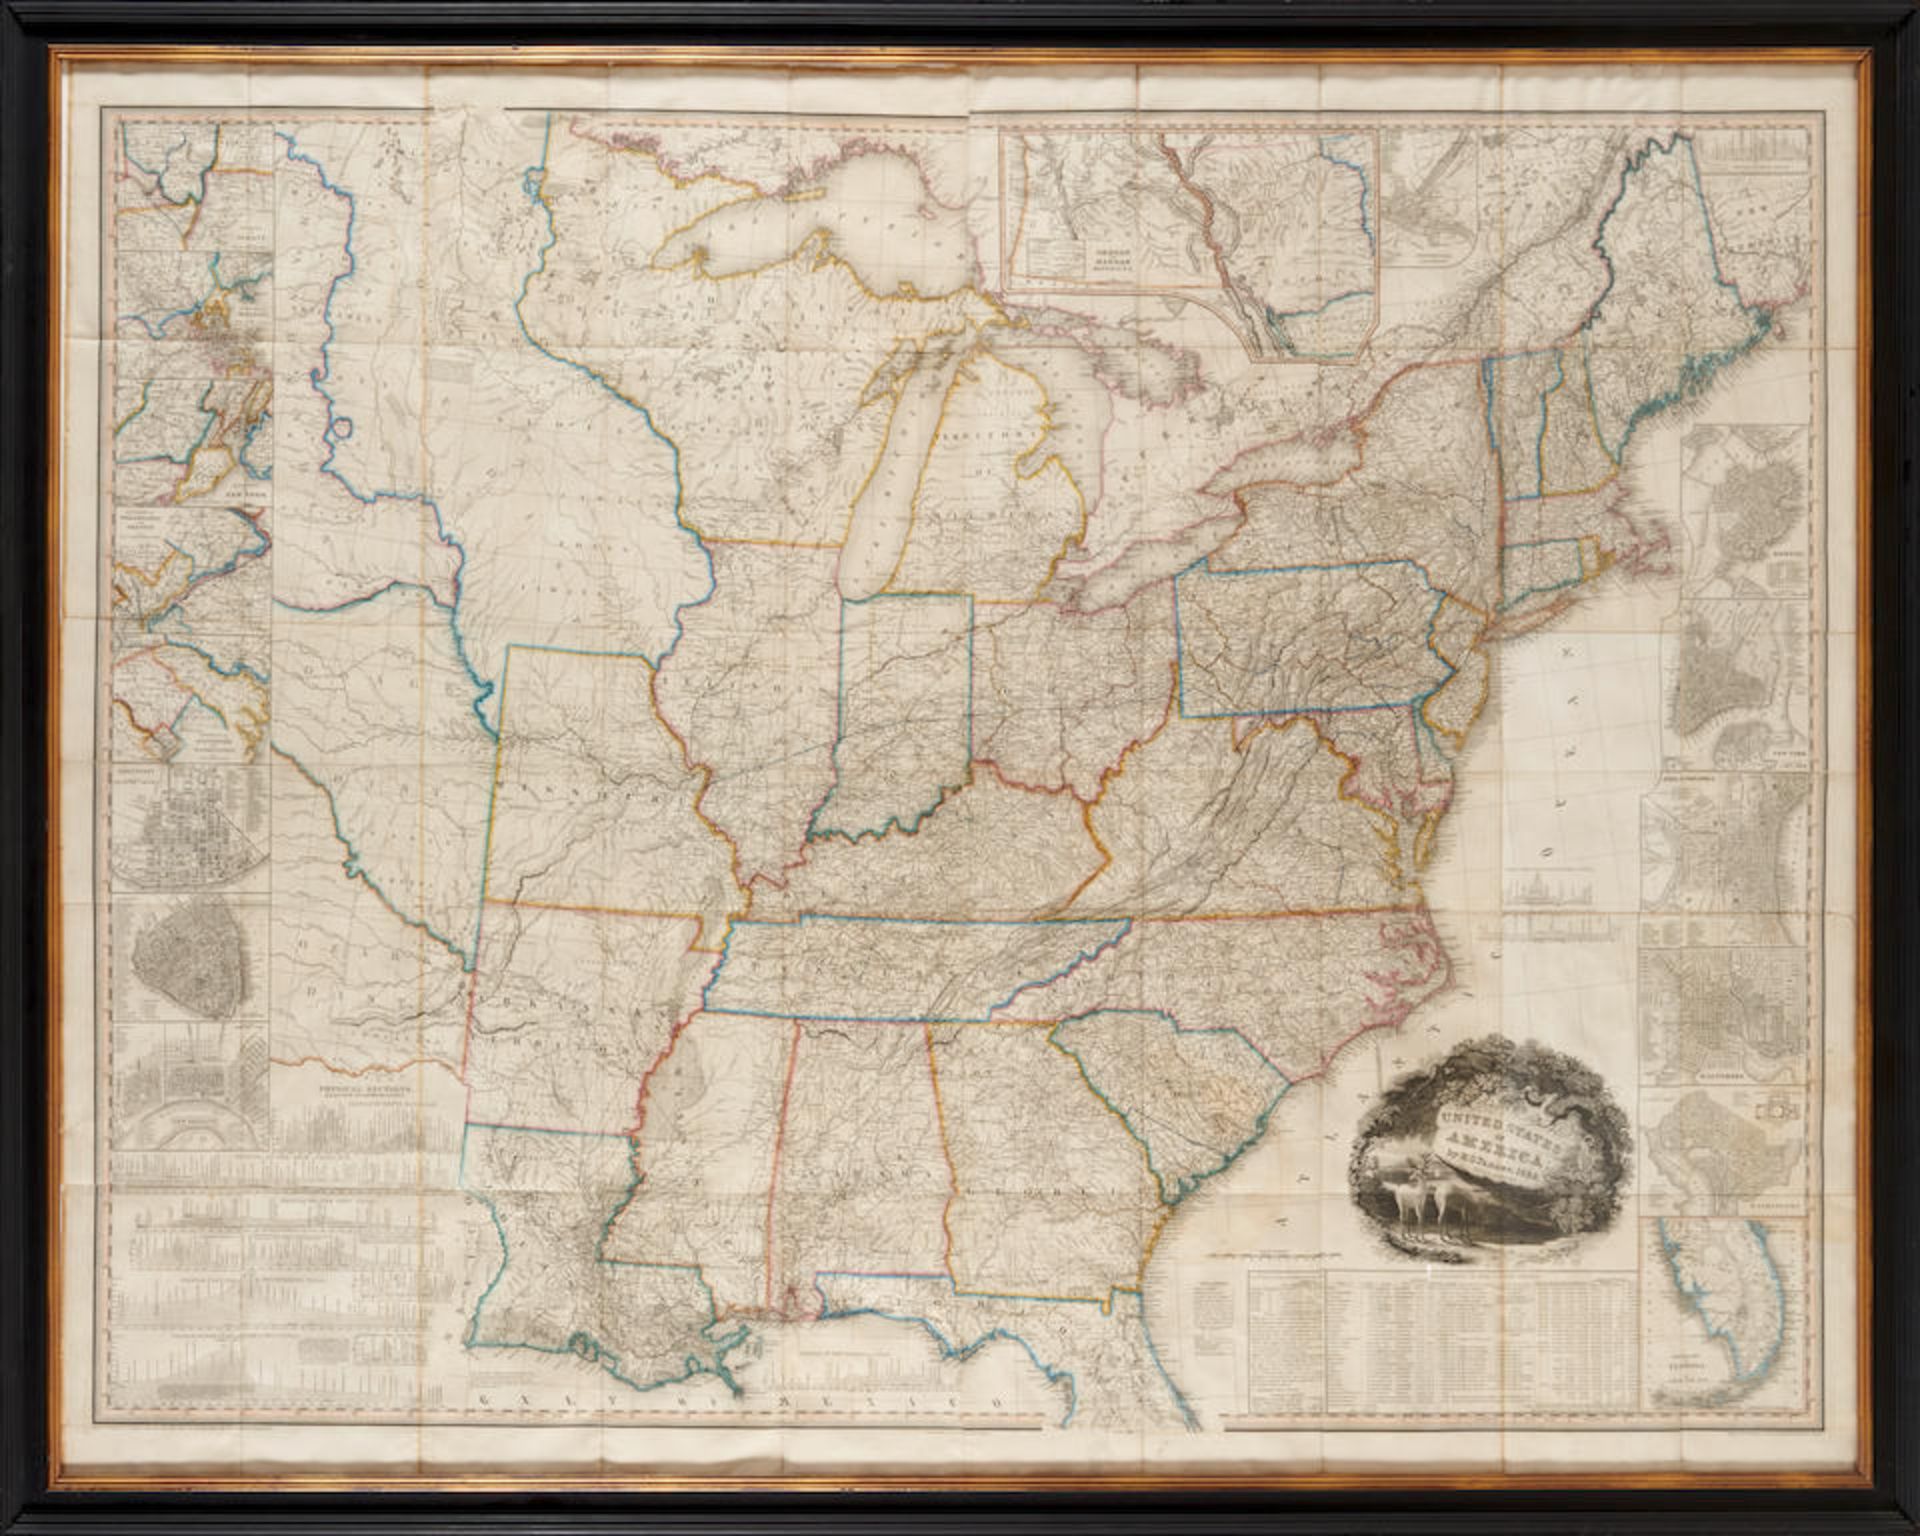 TANNER, HENRY S. United State of America. Philadelphia: H.S. Tanner, 1832.